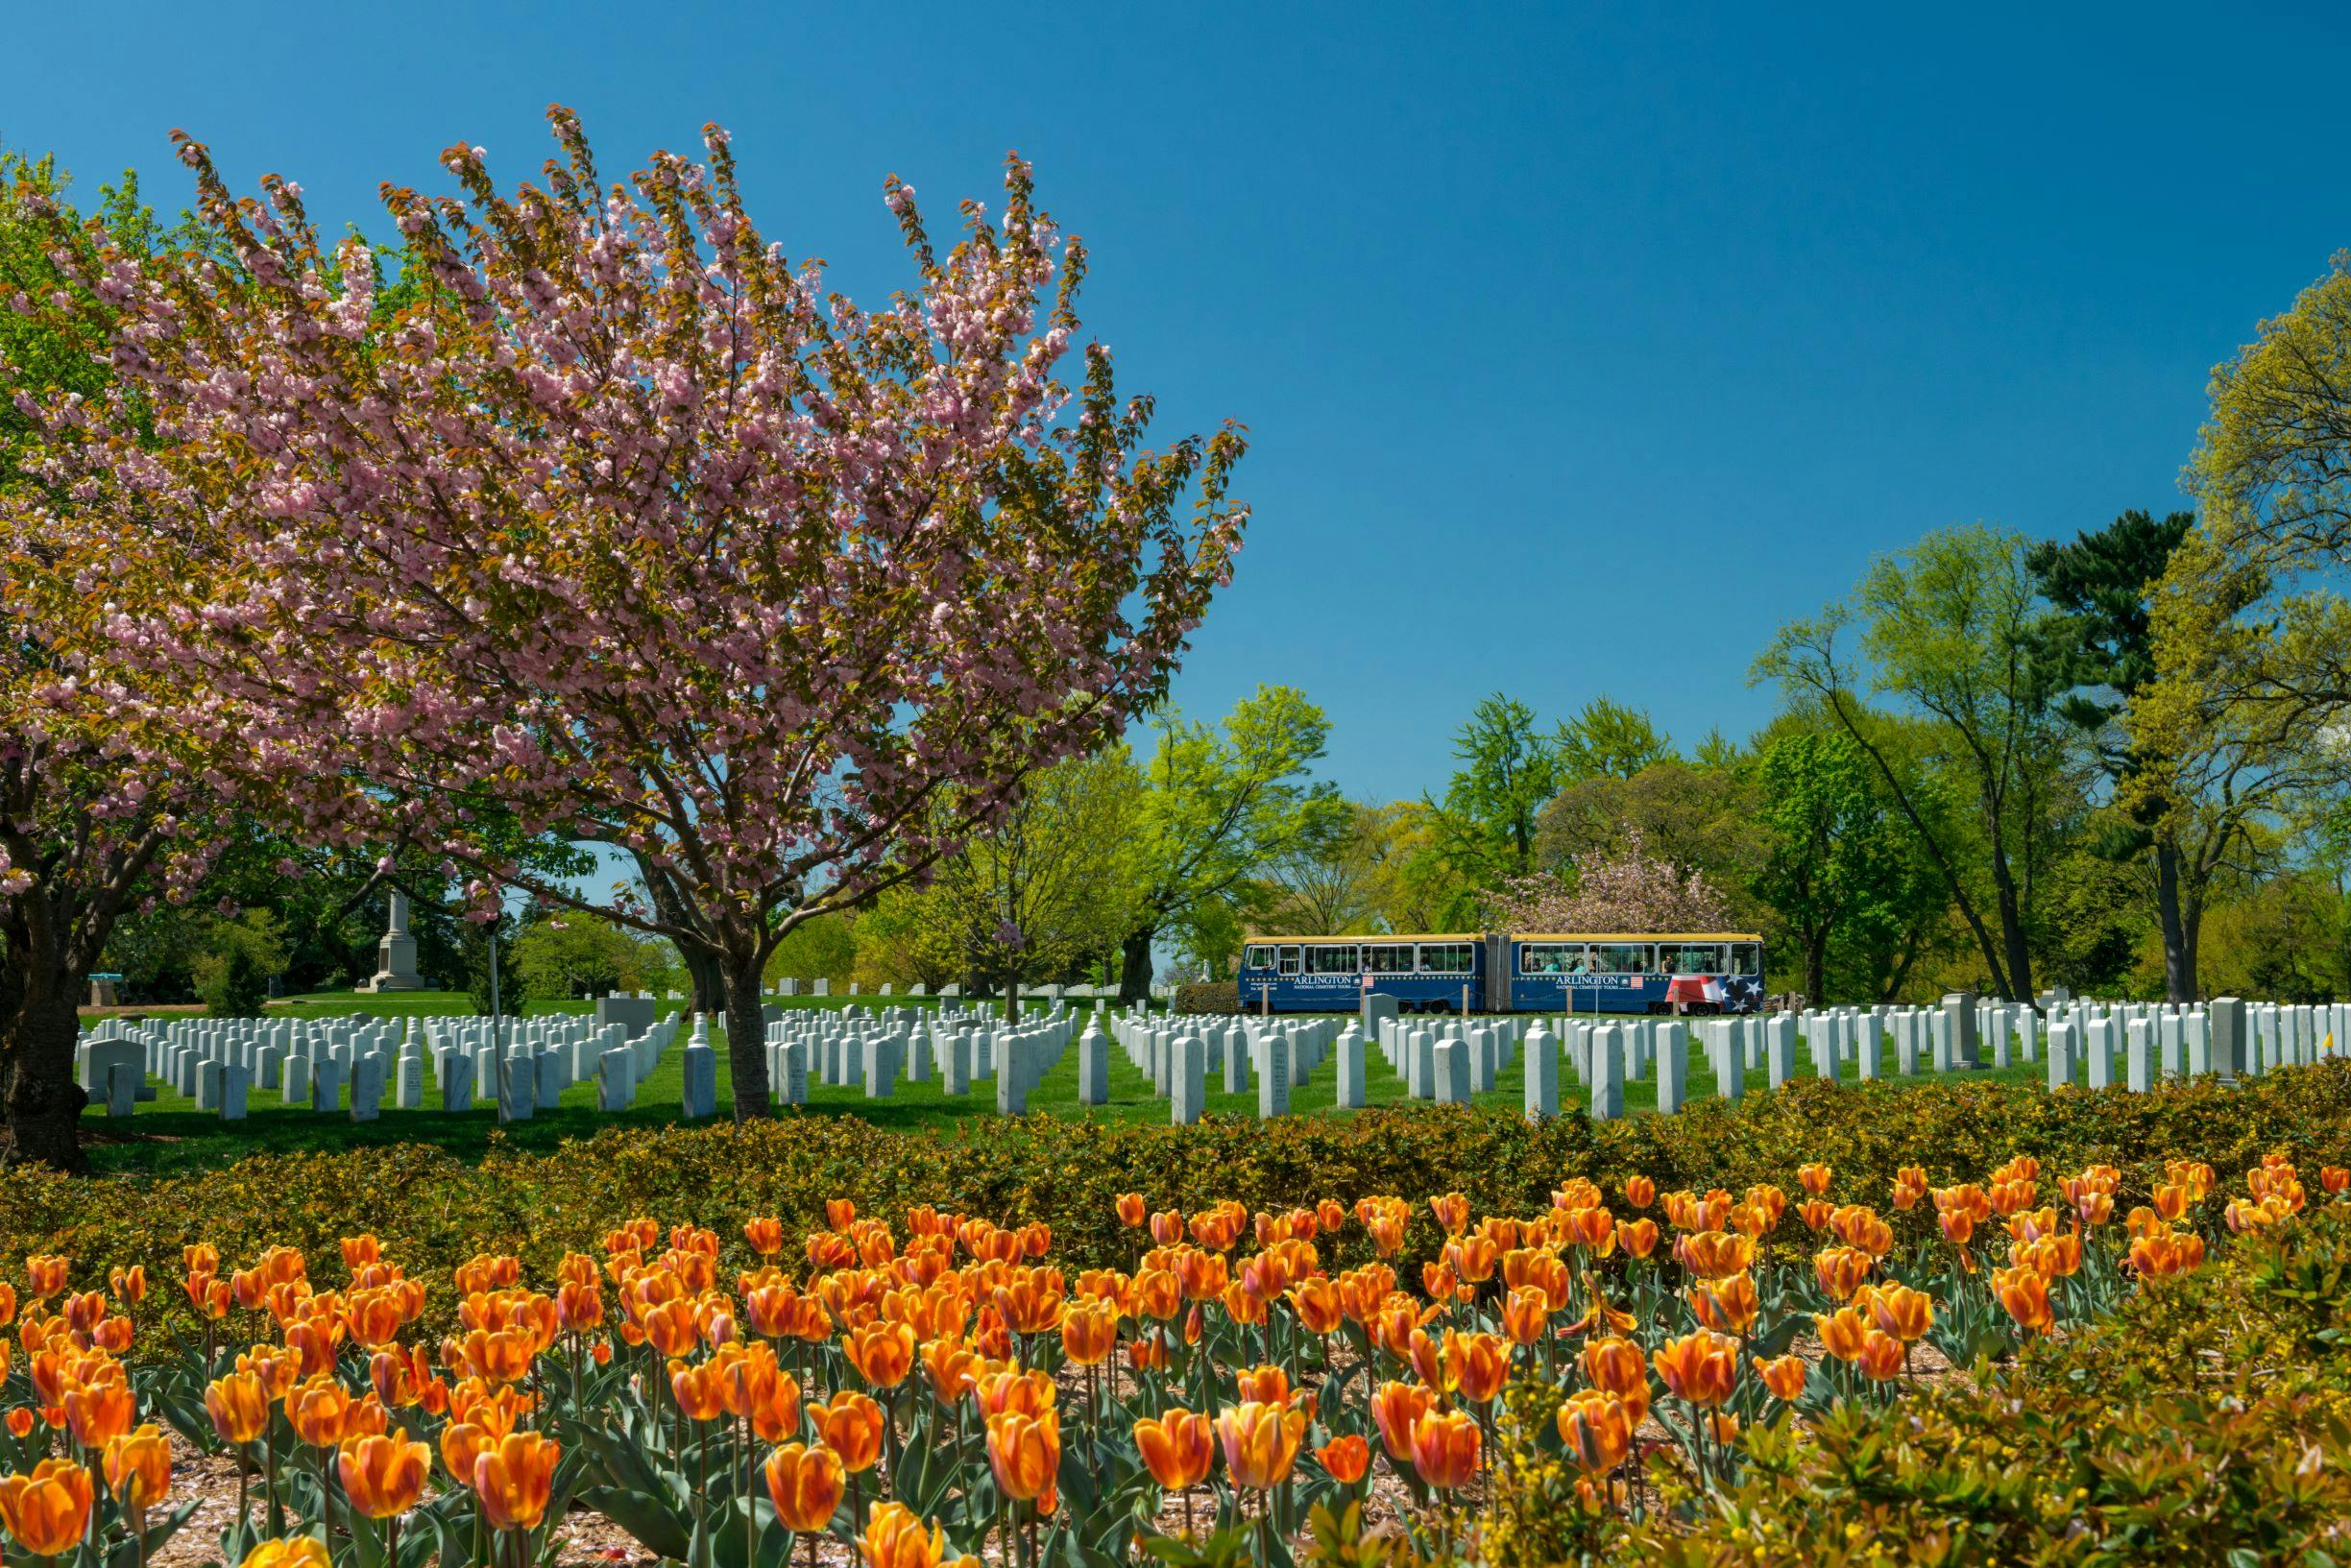 Visita al Cementerio Nacional de Arlington